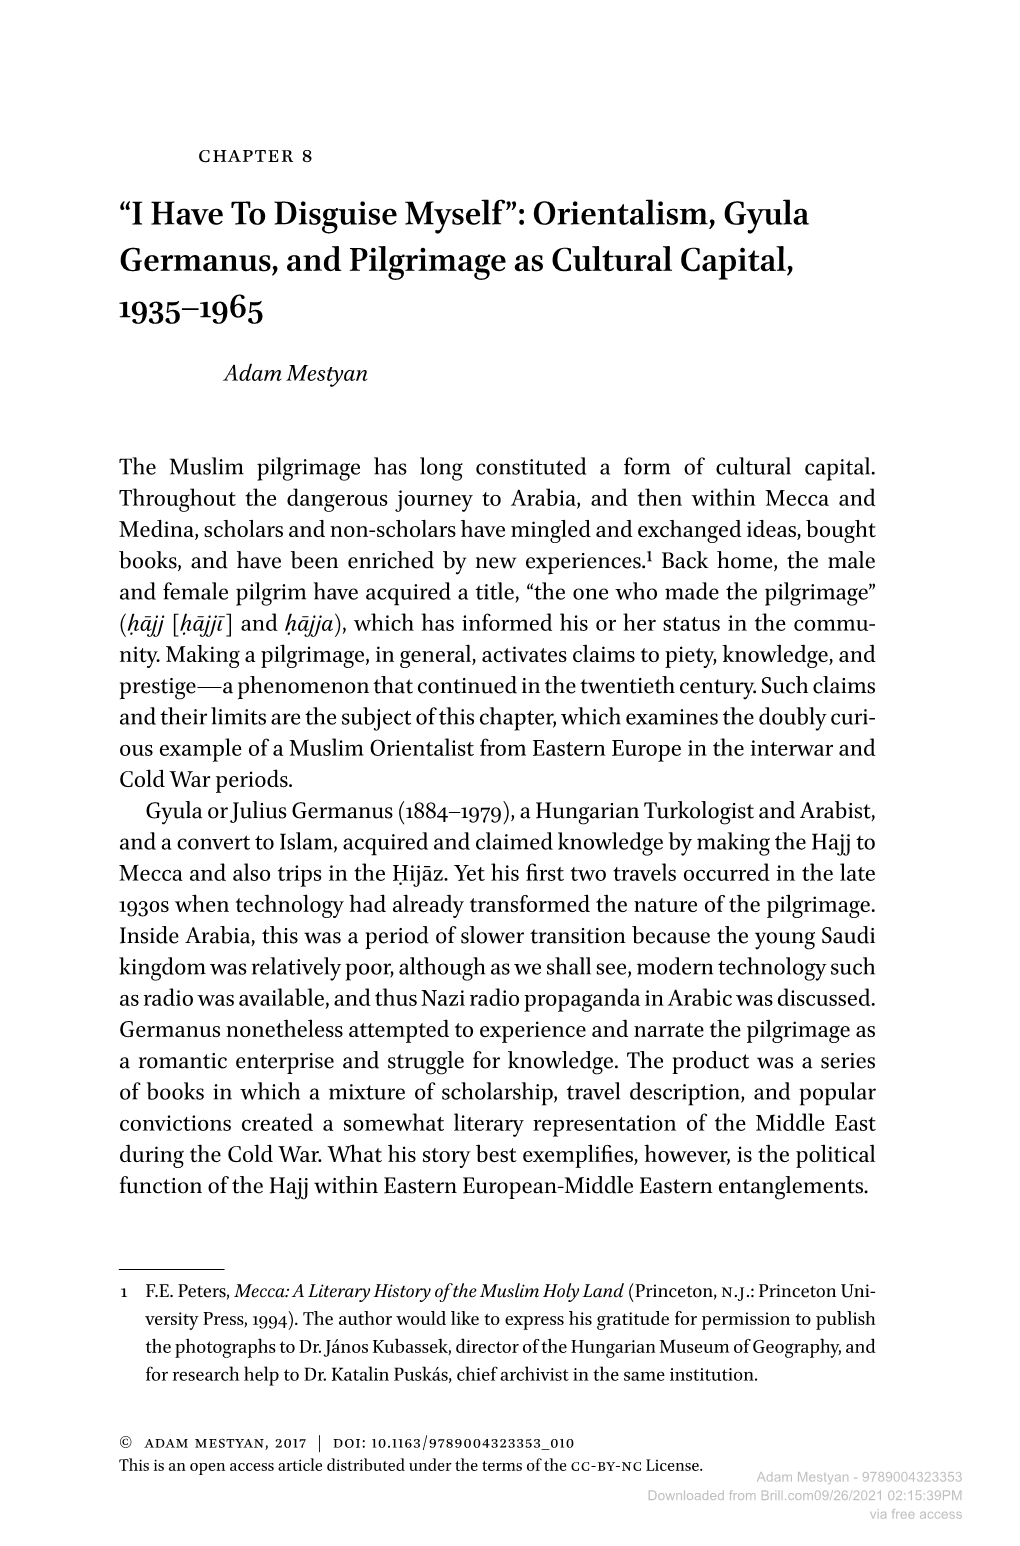 Orientalism, Gyula Germanus, and Pilgrimage As Cultural Capital, 1935–1965